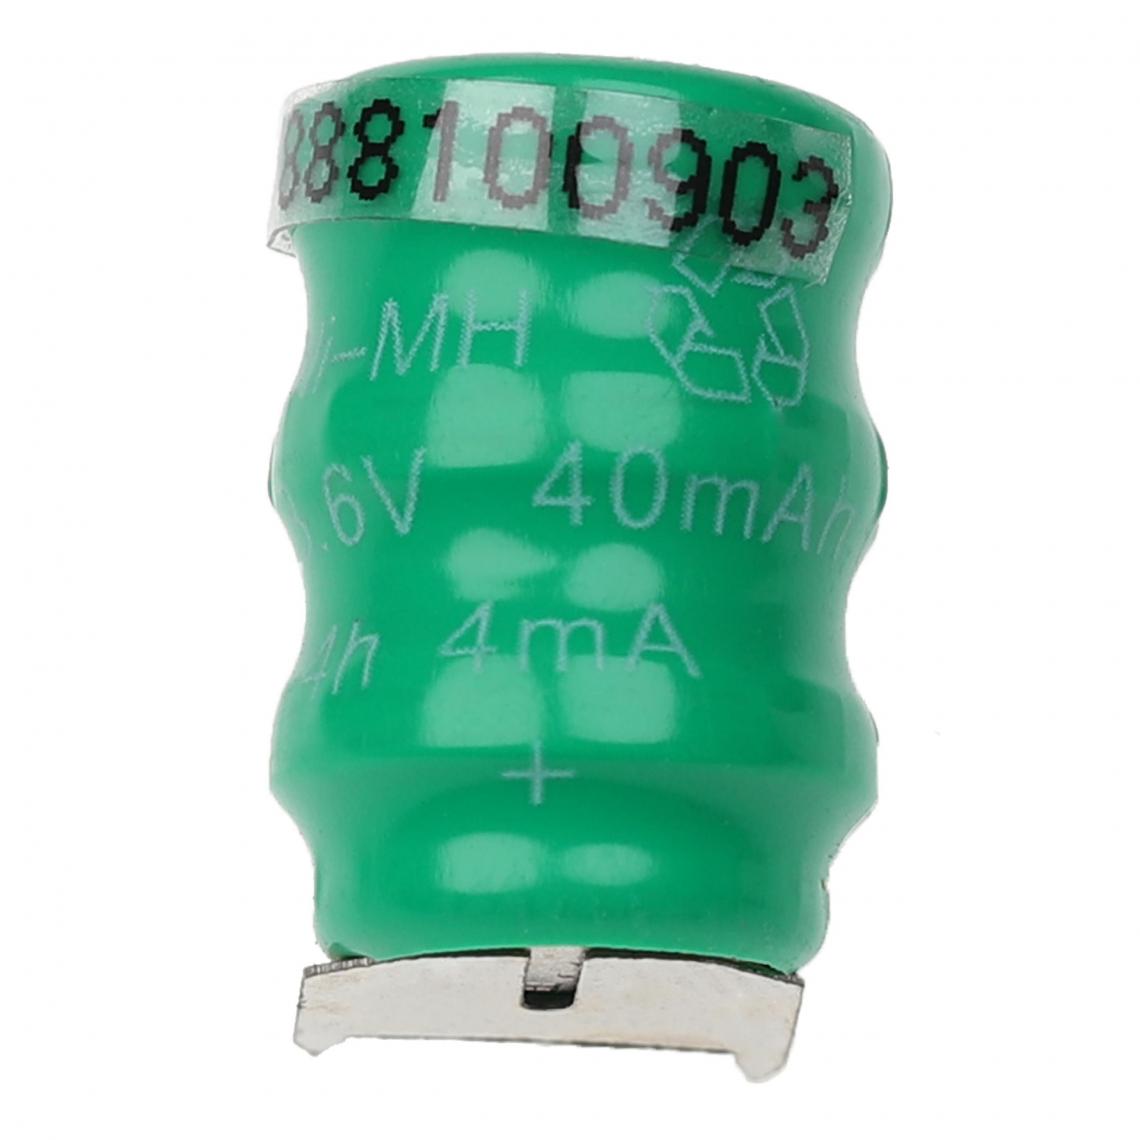 Vhbw - vhbw Batterie bouton type V40H (NiMH, 40mAh, 3.6V) - batterie à 3 éléments, 3 connecteurs, rechargeable - Autre appareil de mesure